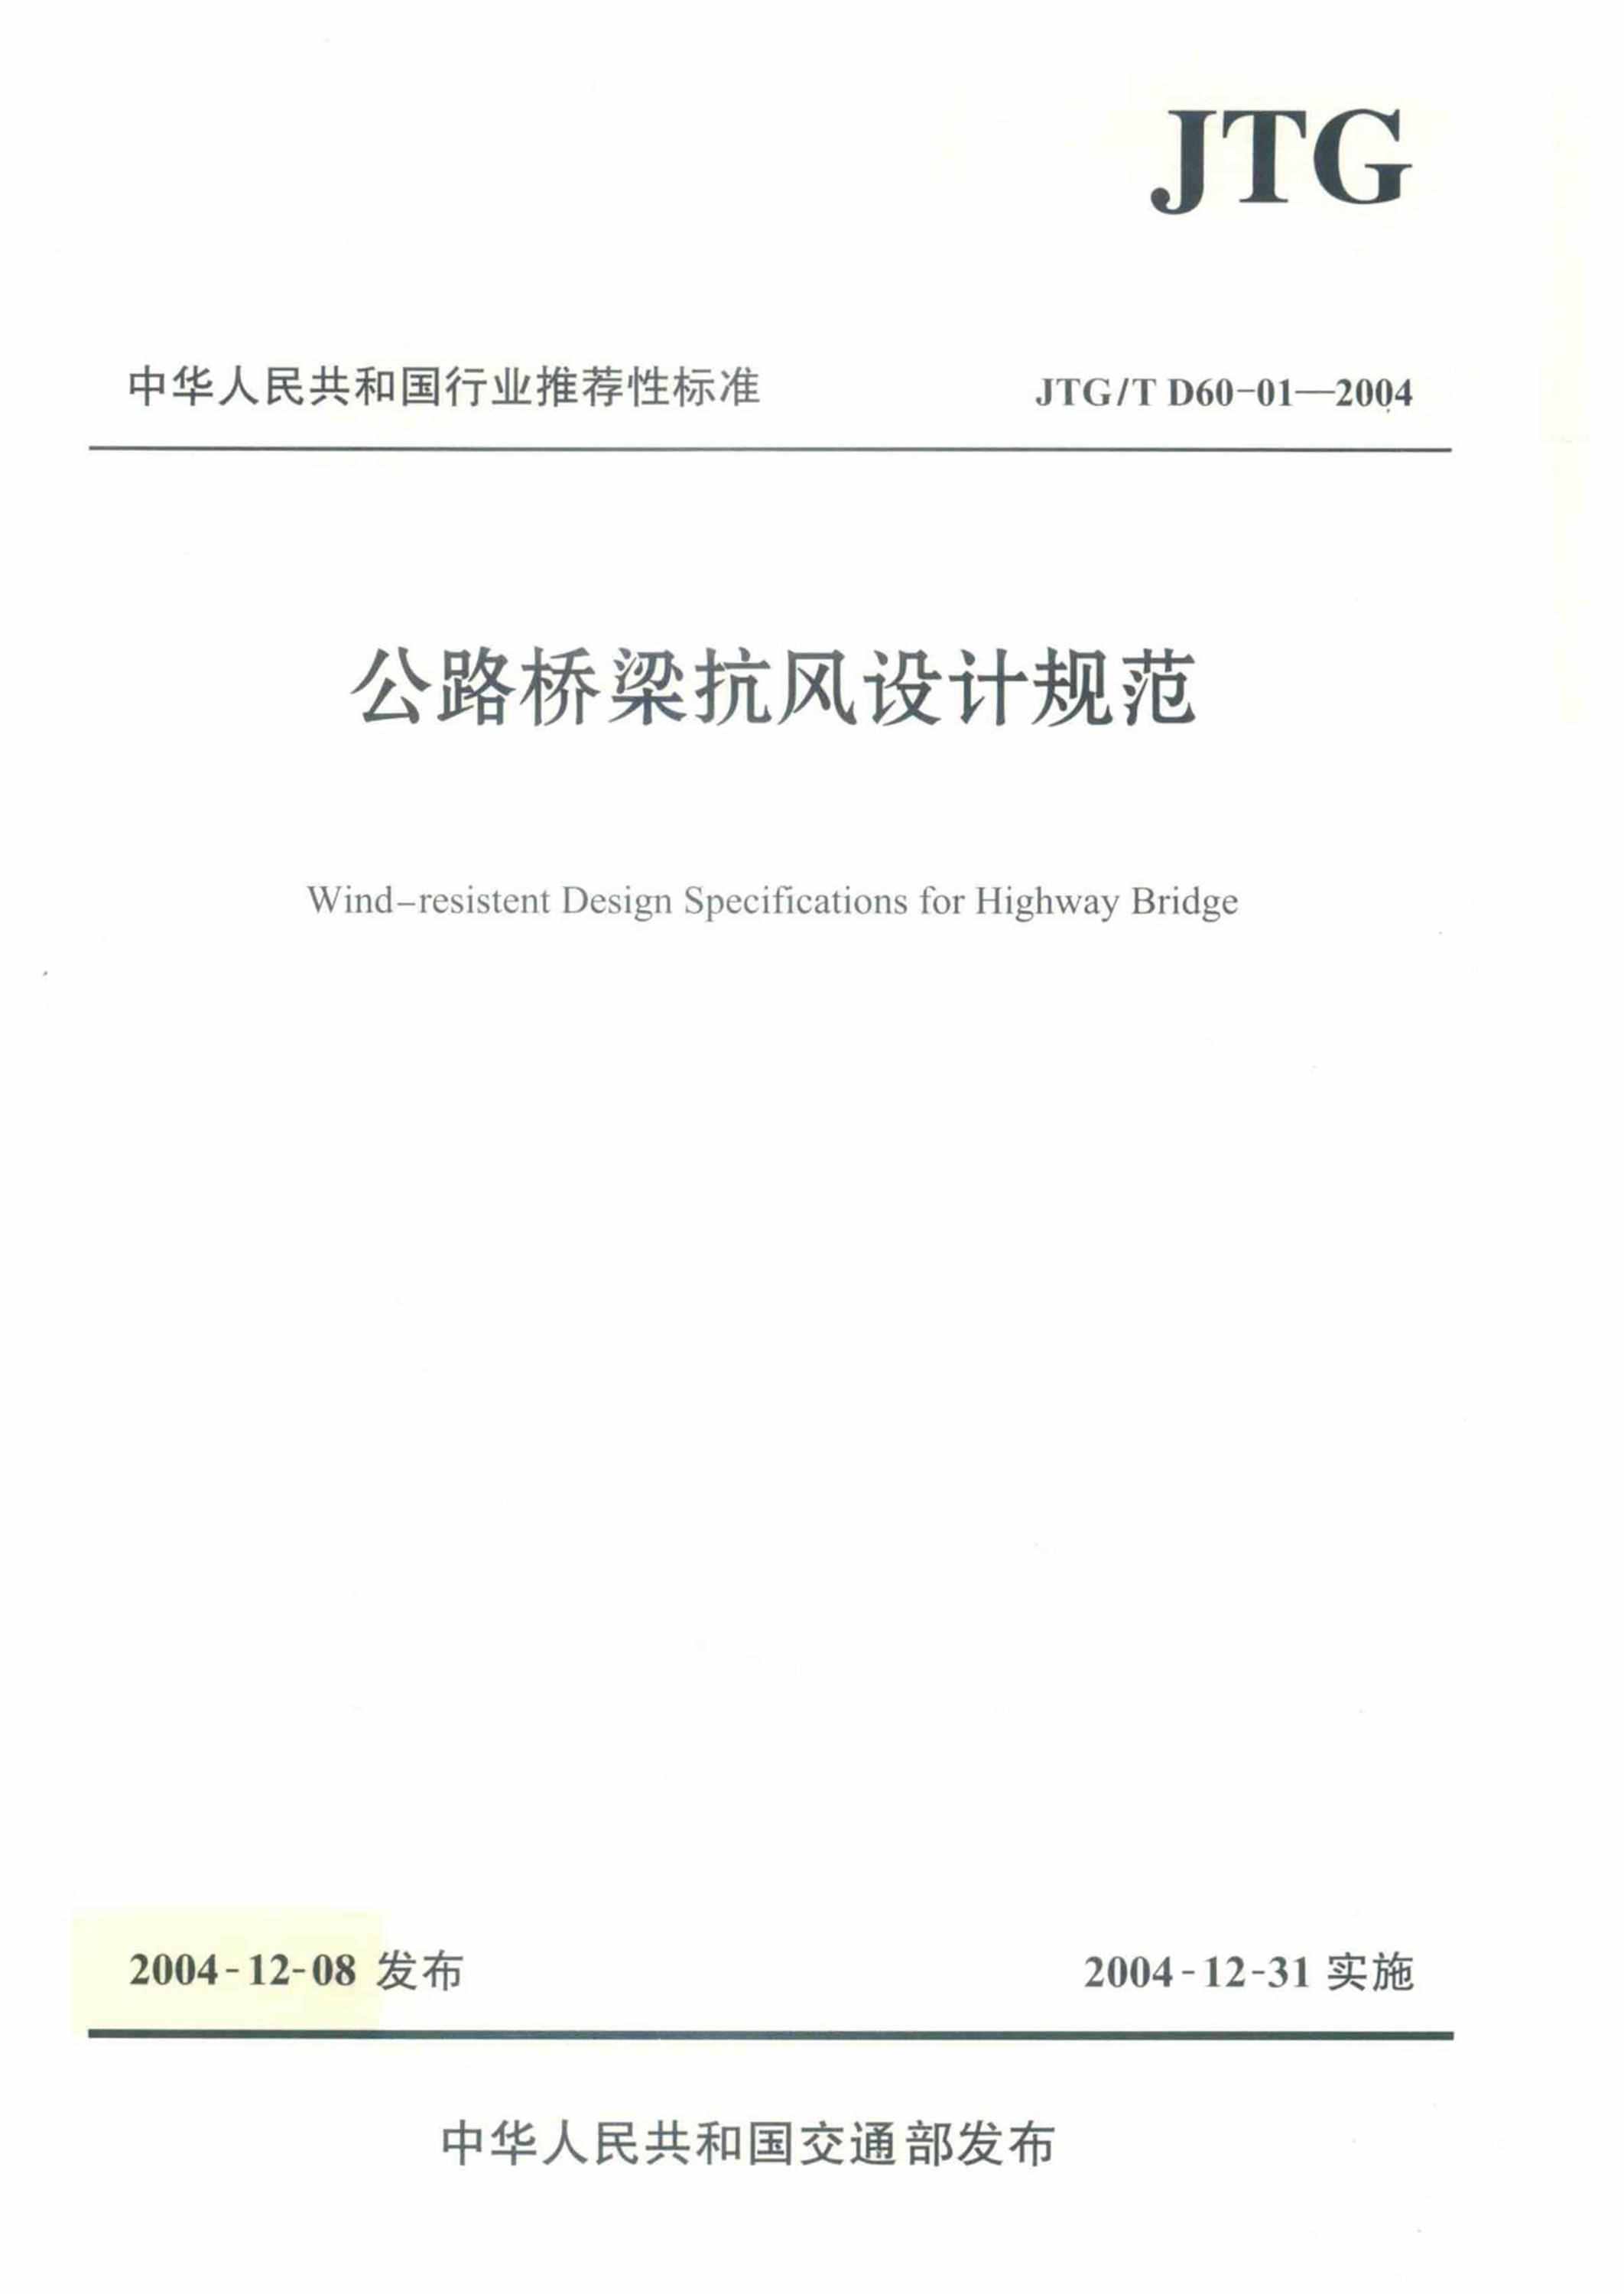 JTG/T D60-01-2004 公路桥梁抗风设计规范